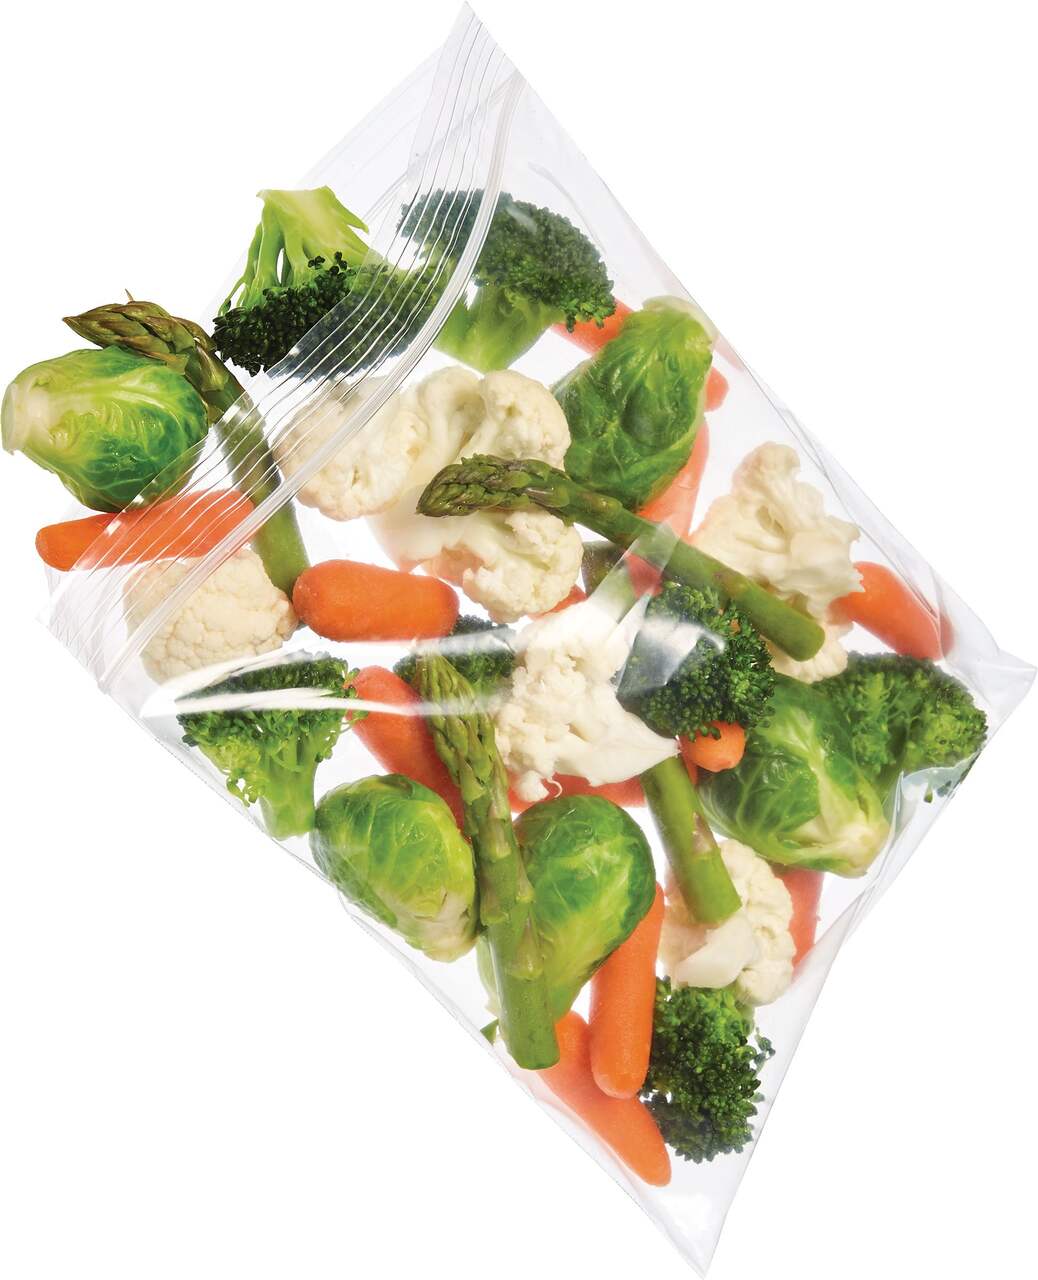 Ziploc Medium Freezer Plastic Bags, 950-mL, 38-pk